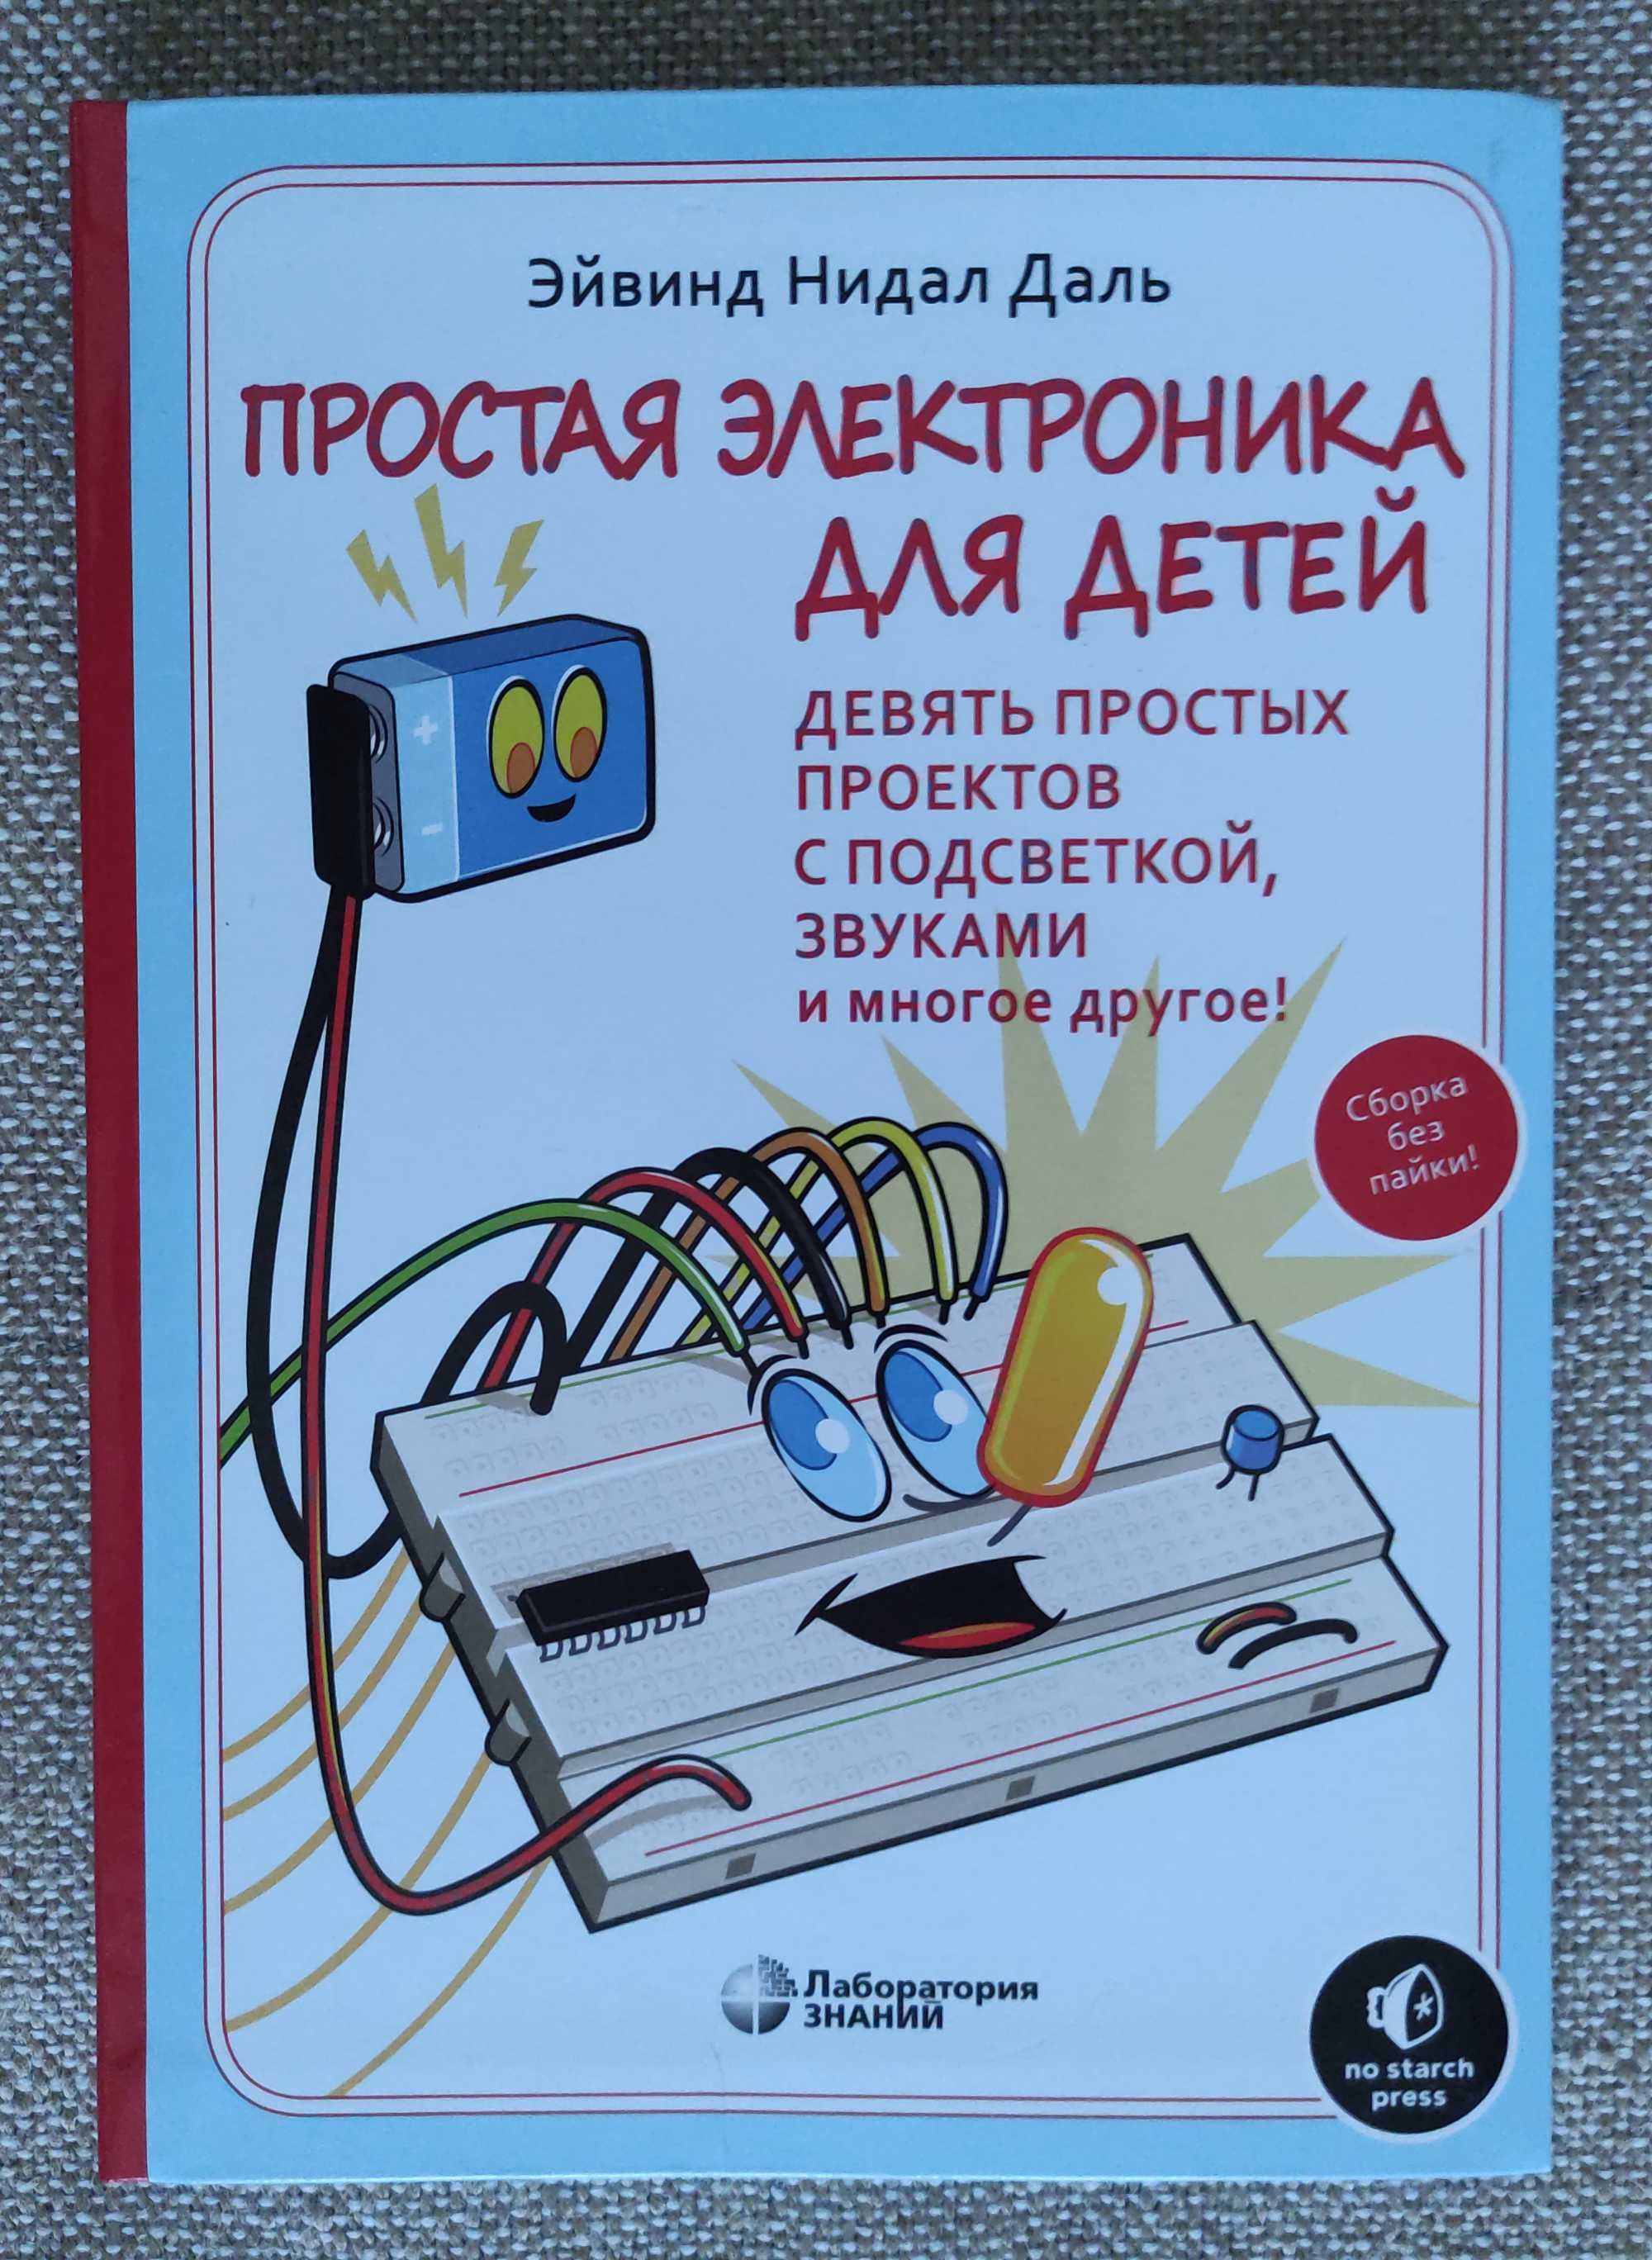 Набор конструктор + книга "Простая электроника для детей"